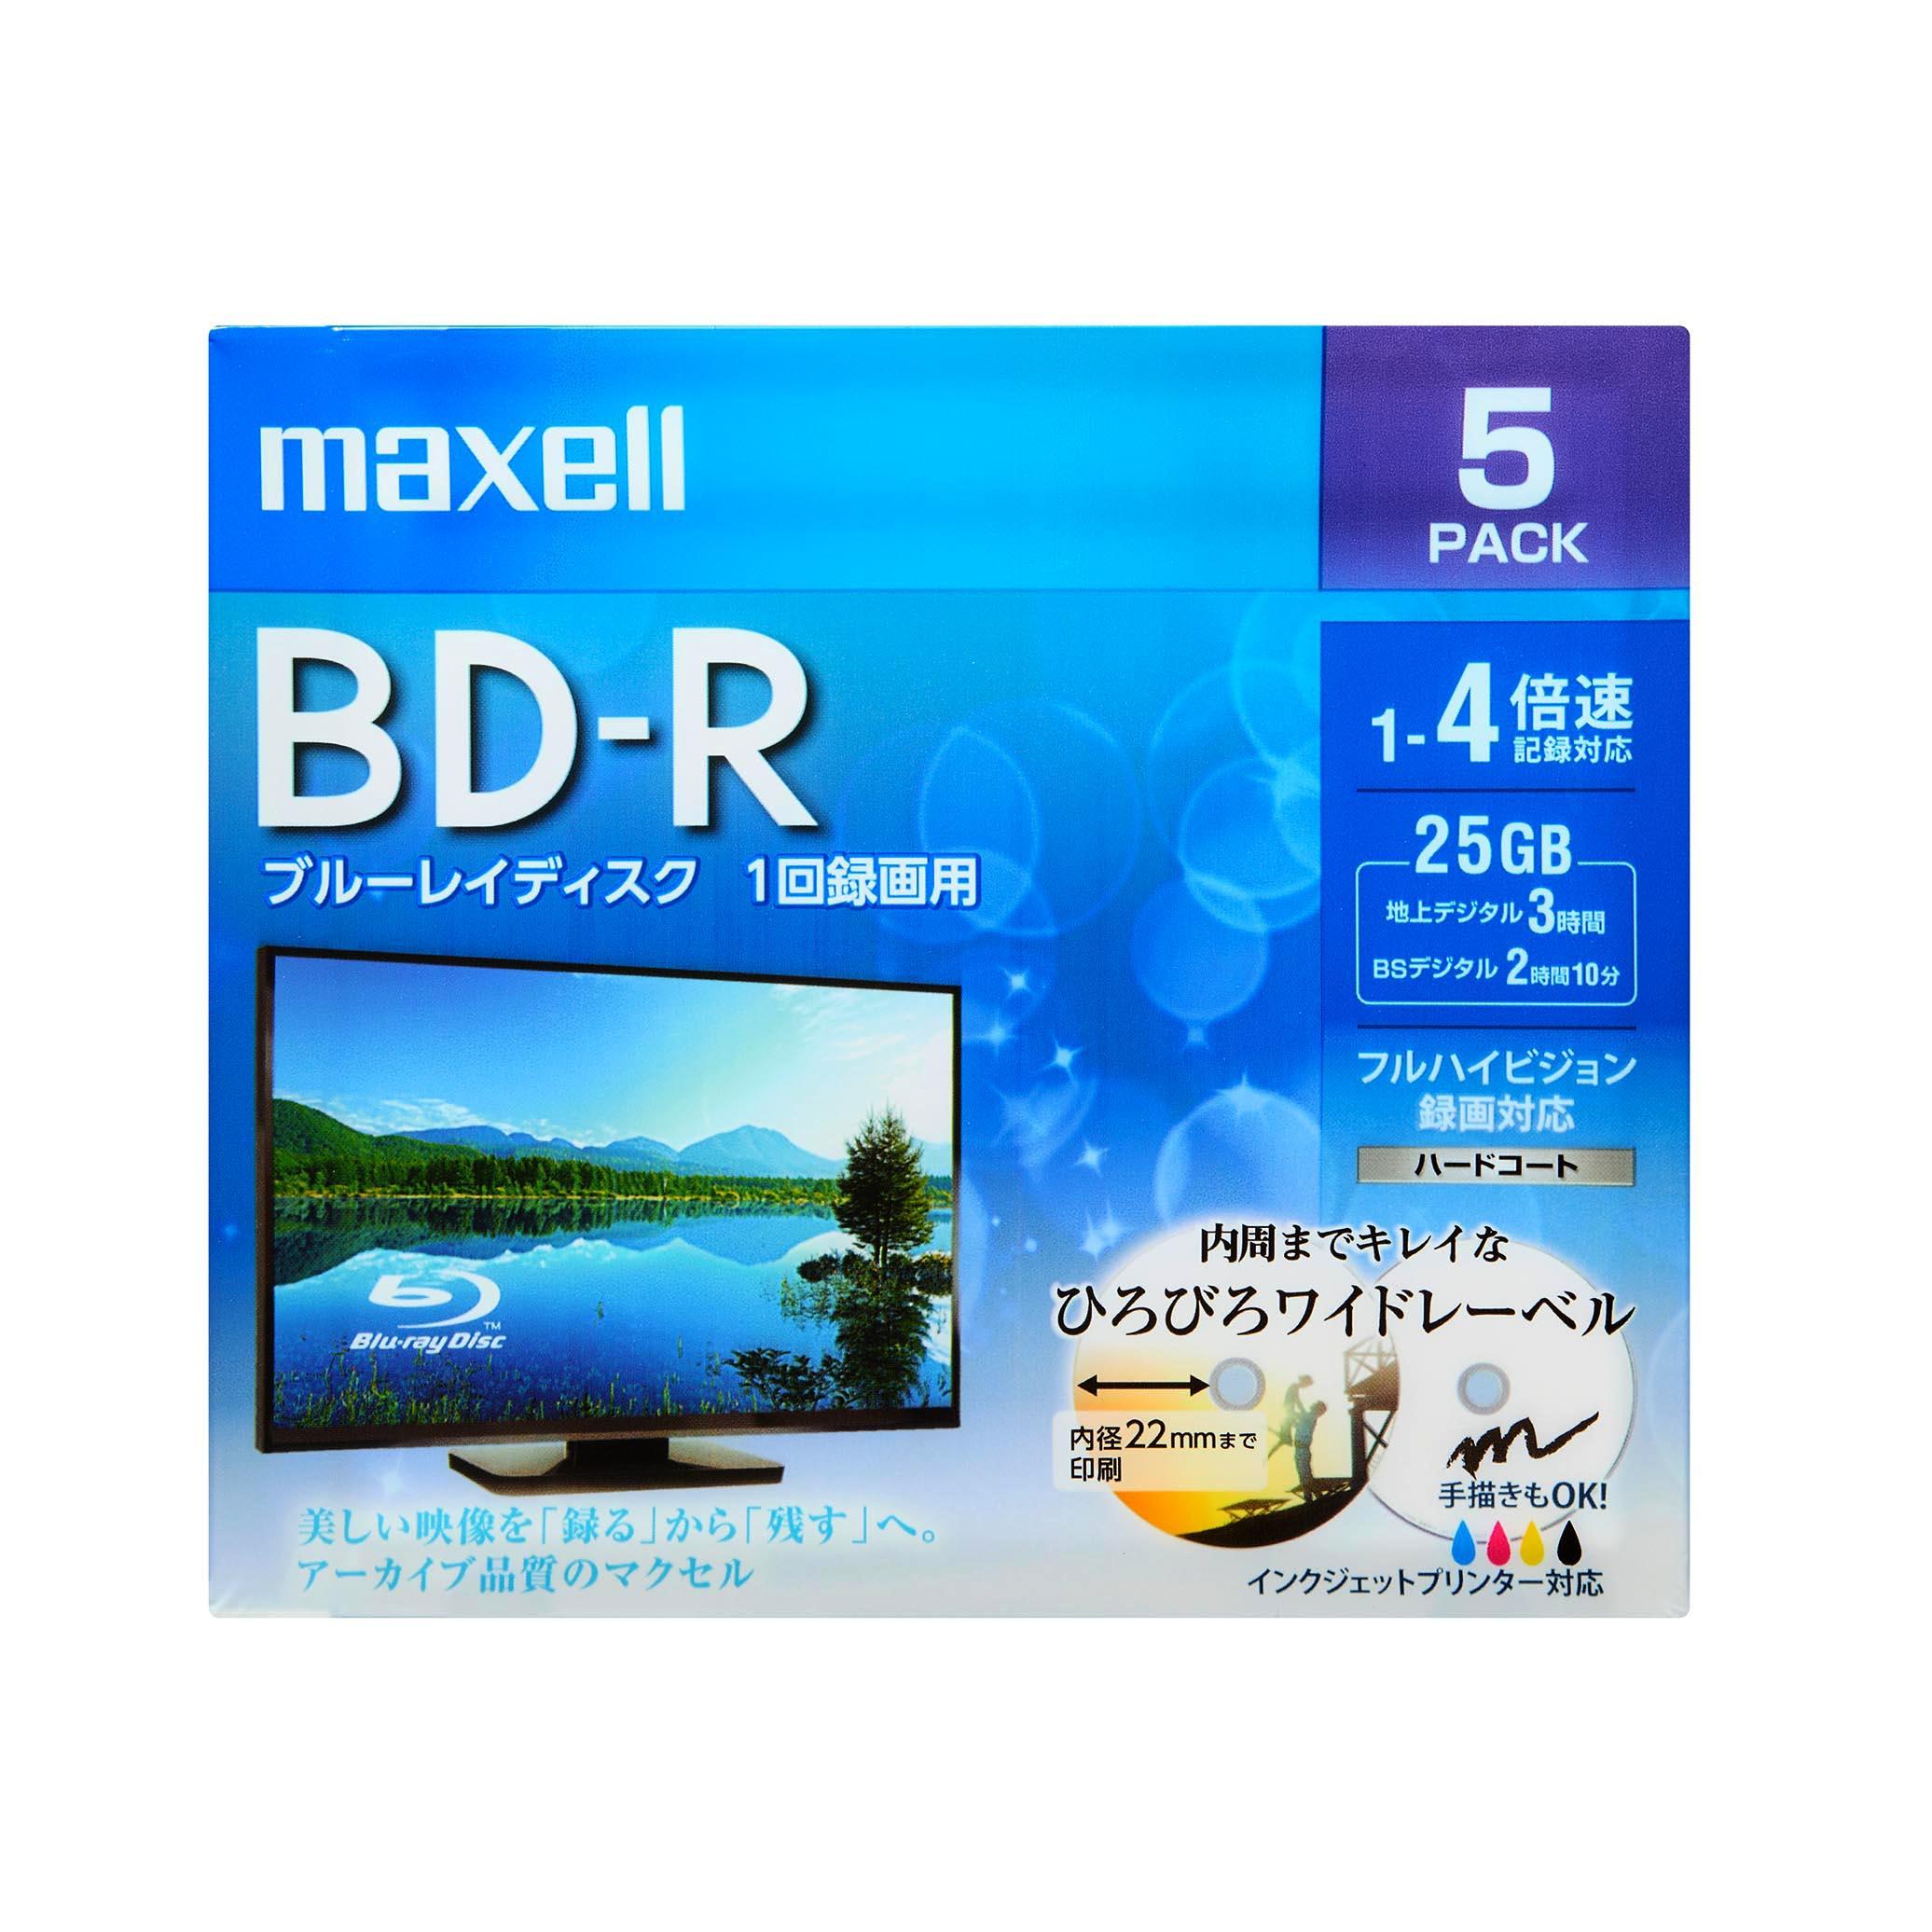 録画用ブルーレイディスクBD-Rひろびろワイド(美白)レーベルディスク(1 